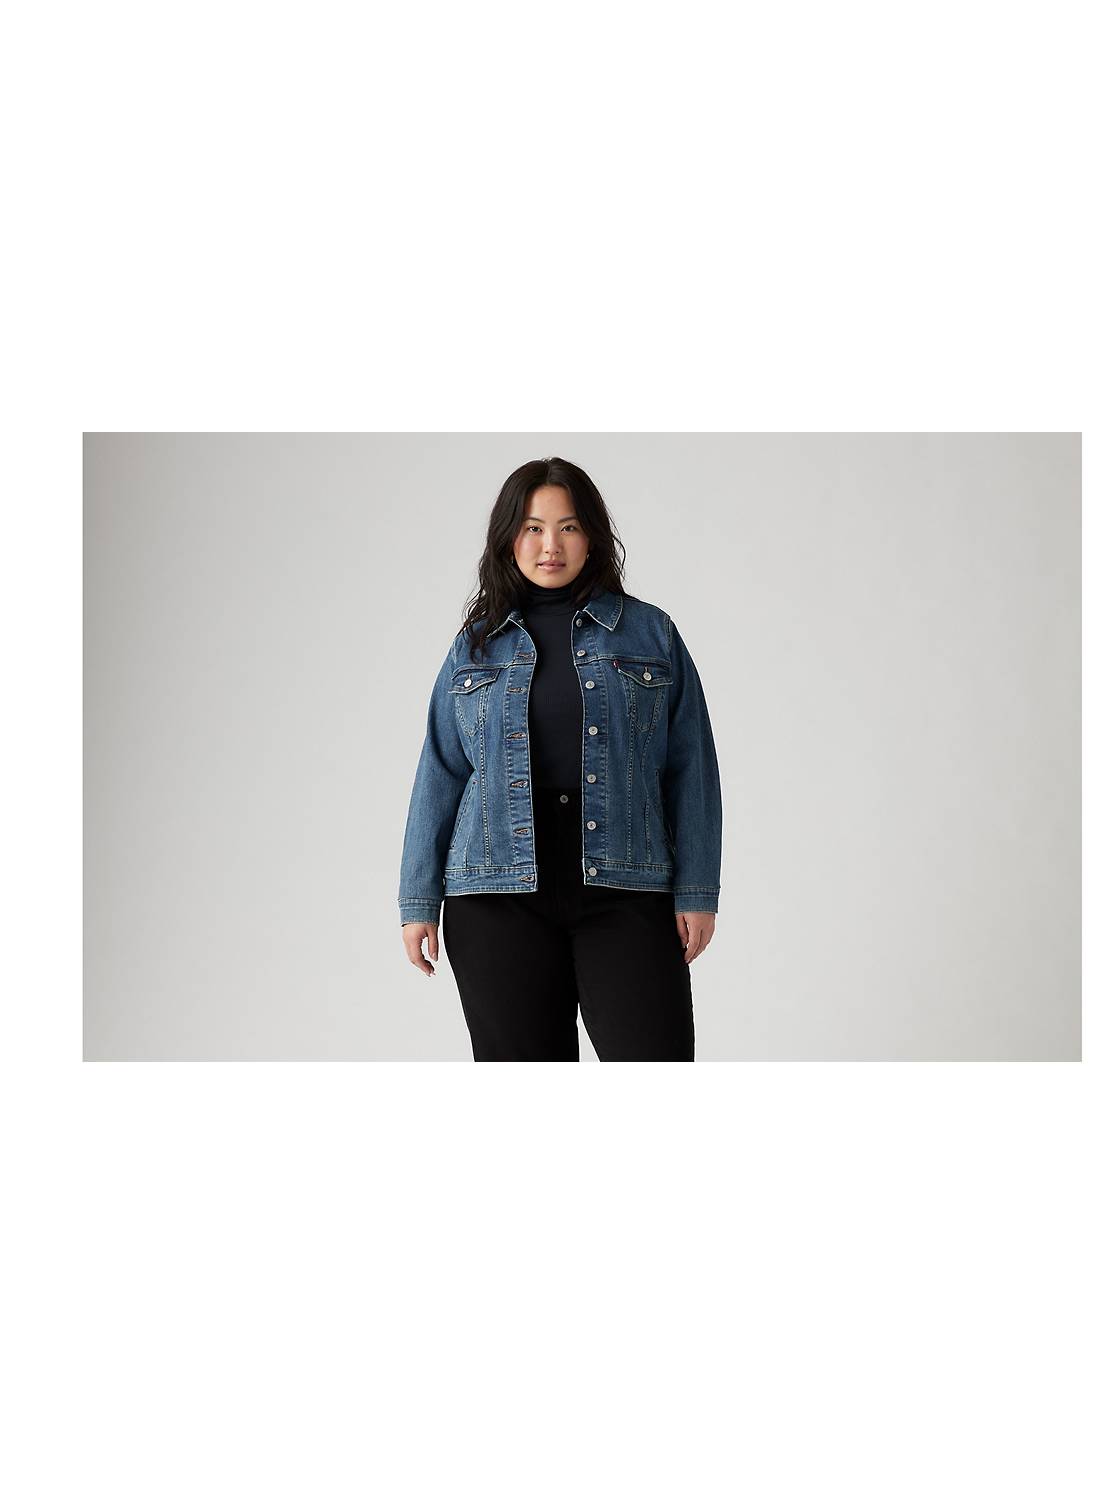 Hasta Sherpa Jean Jacket Women Plus Size Plus Size Winter Jackets